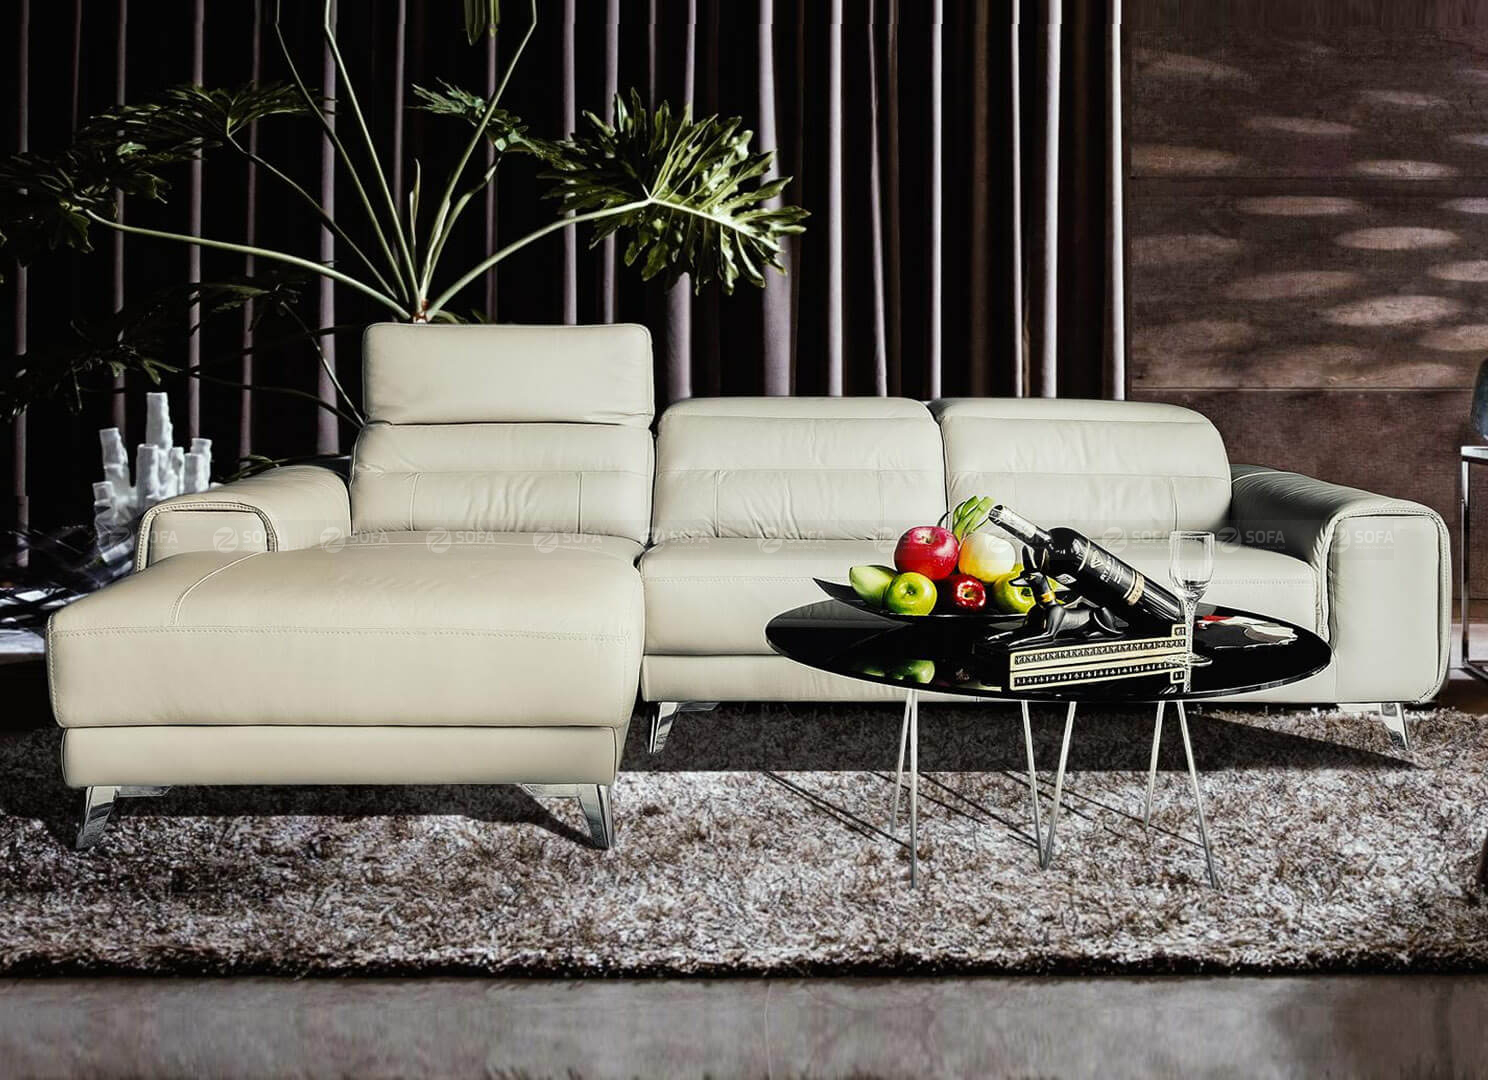 4 bước đơn giản giúp bạn chọn ghế sofa phù hợp